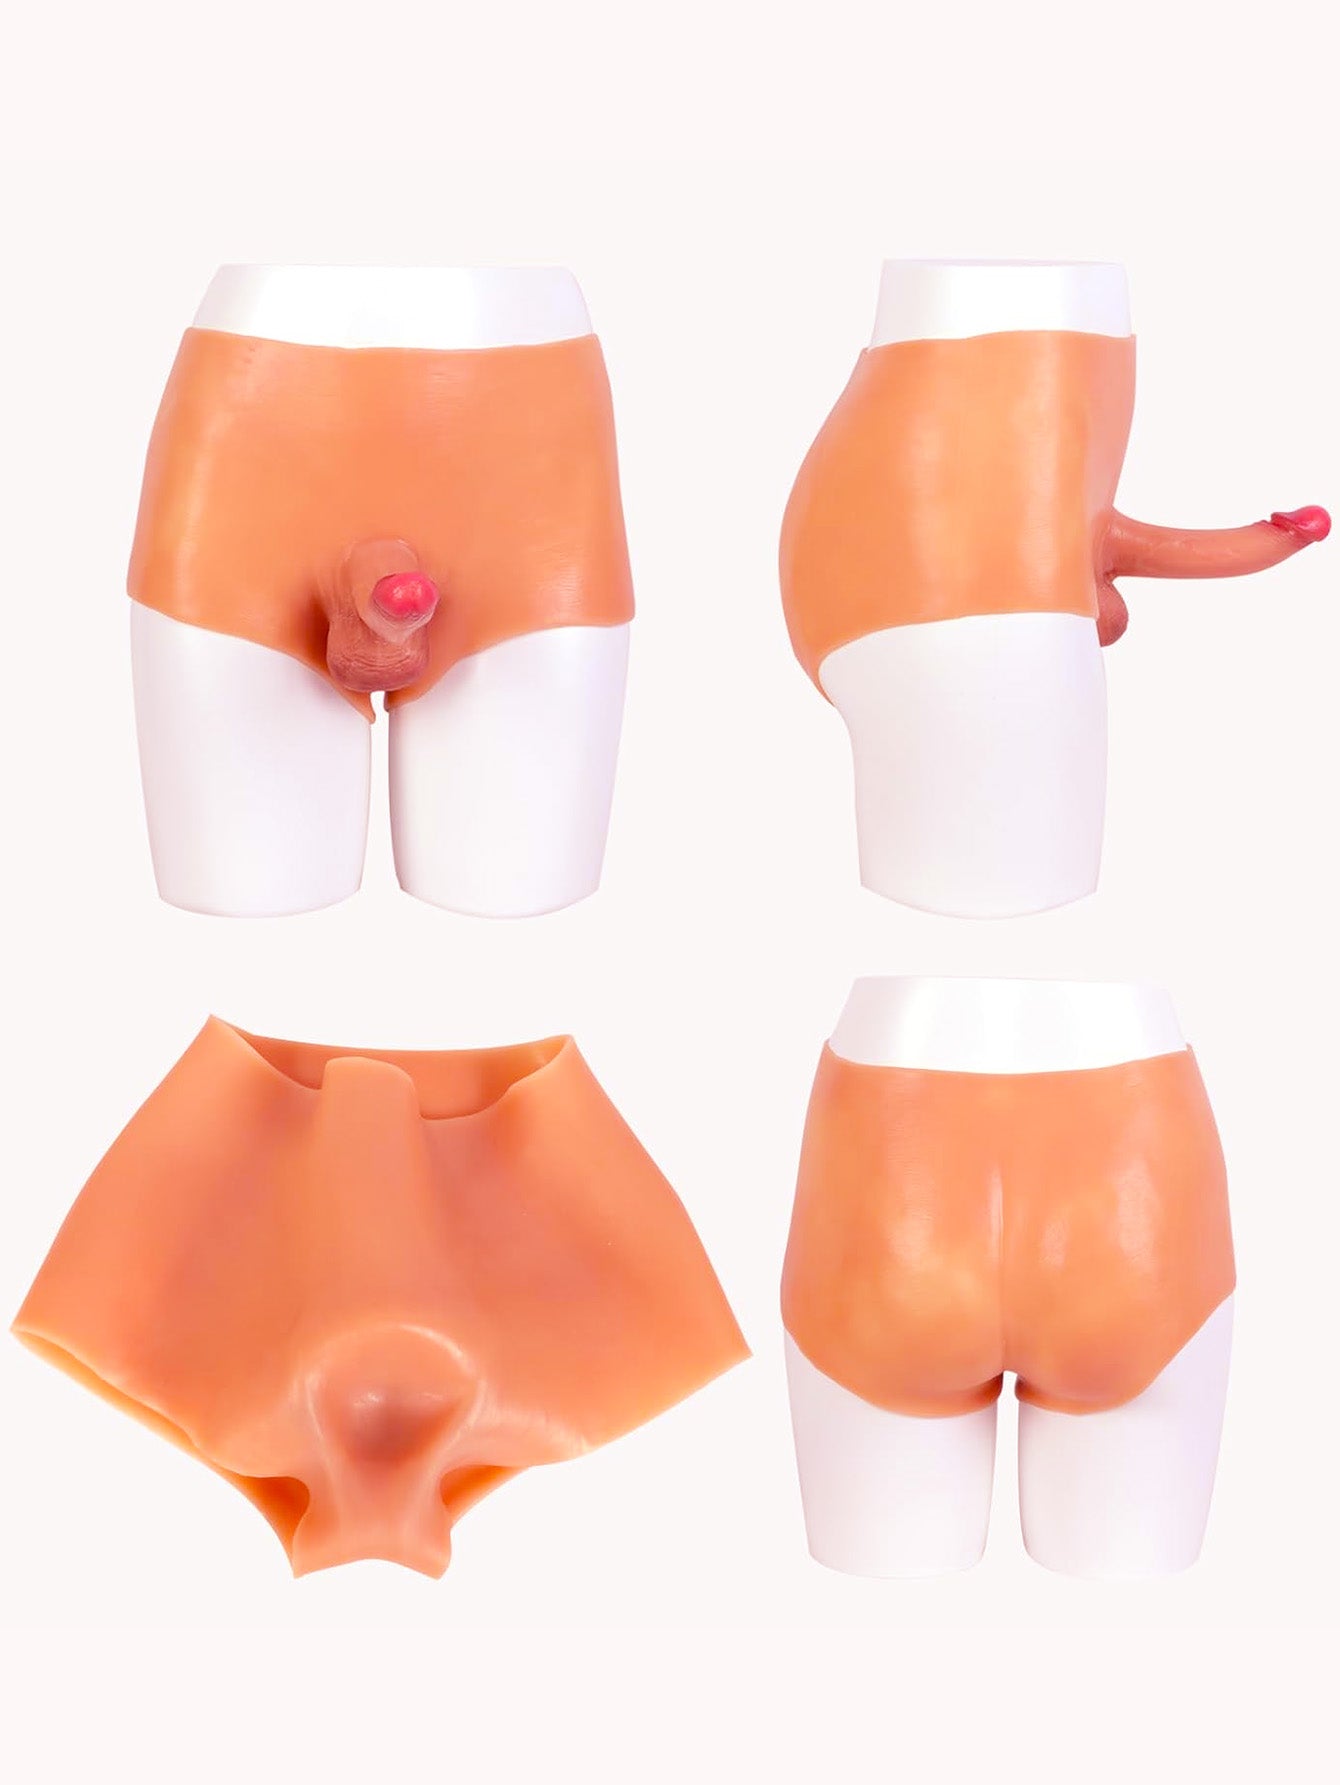 Pantalon gode réaliste à sangle - Jouets sexuels portables en silicone pour couple pour cadeaux lesbiens